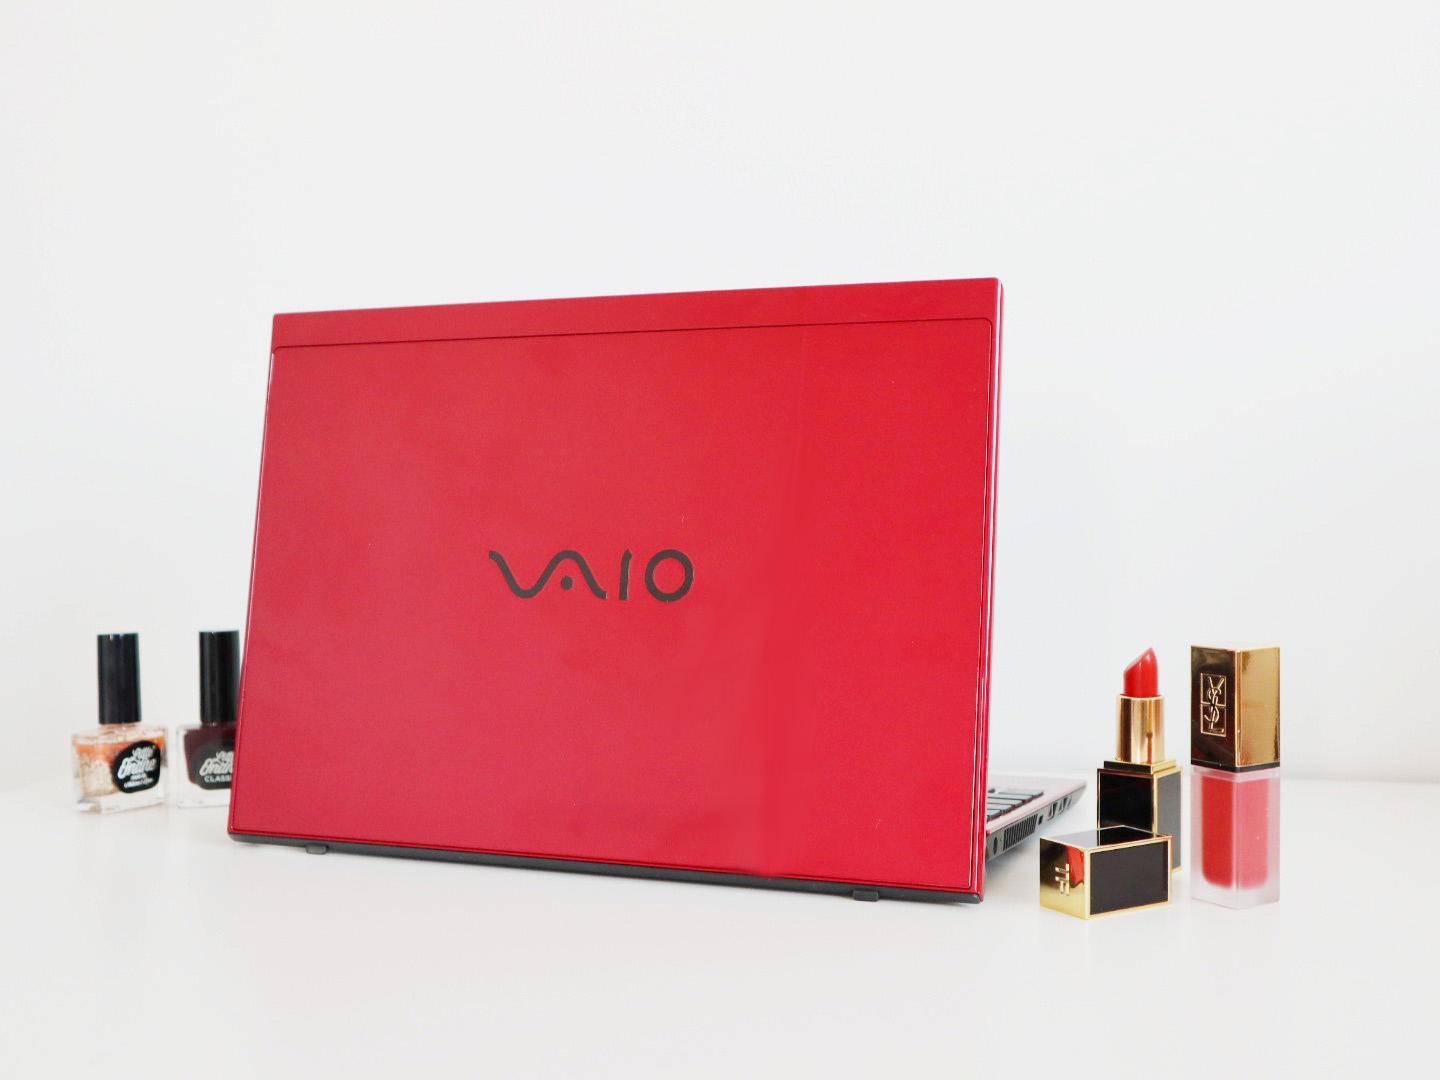 
这可能是现在最轻薄的条记本电脑 VAIO SX12耀世红条